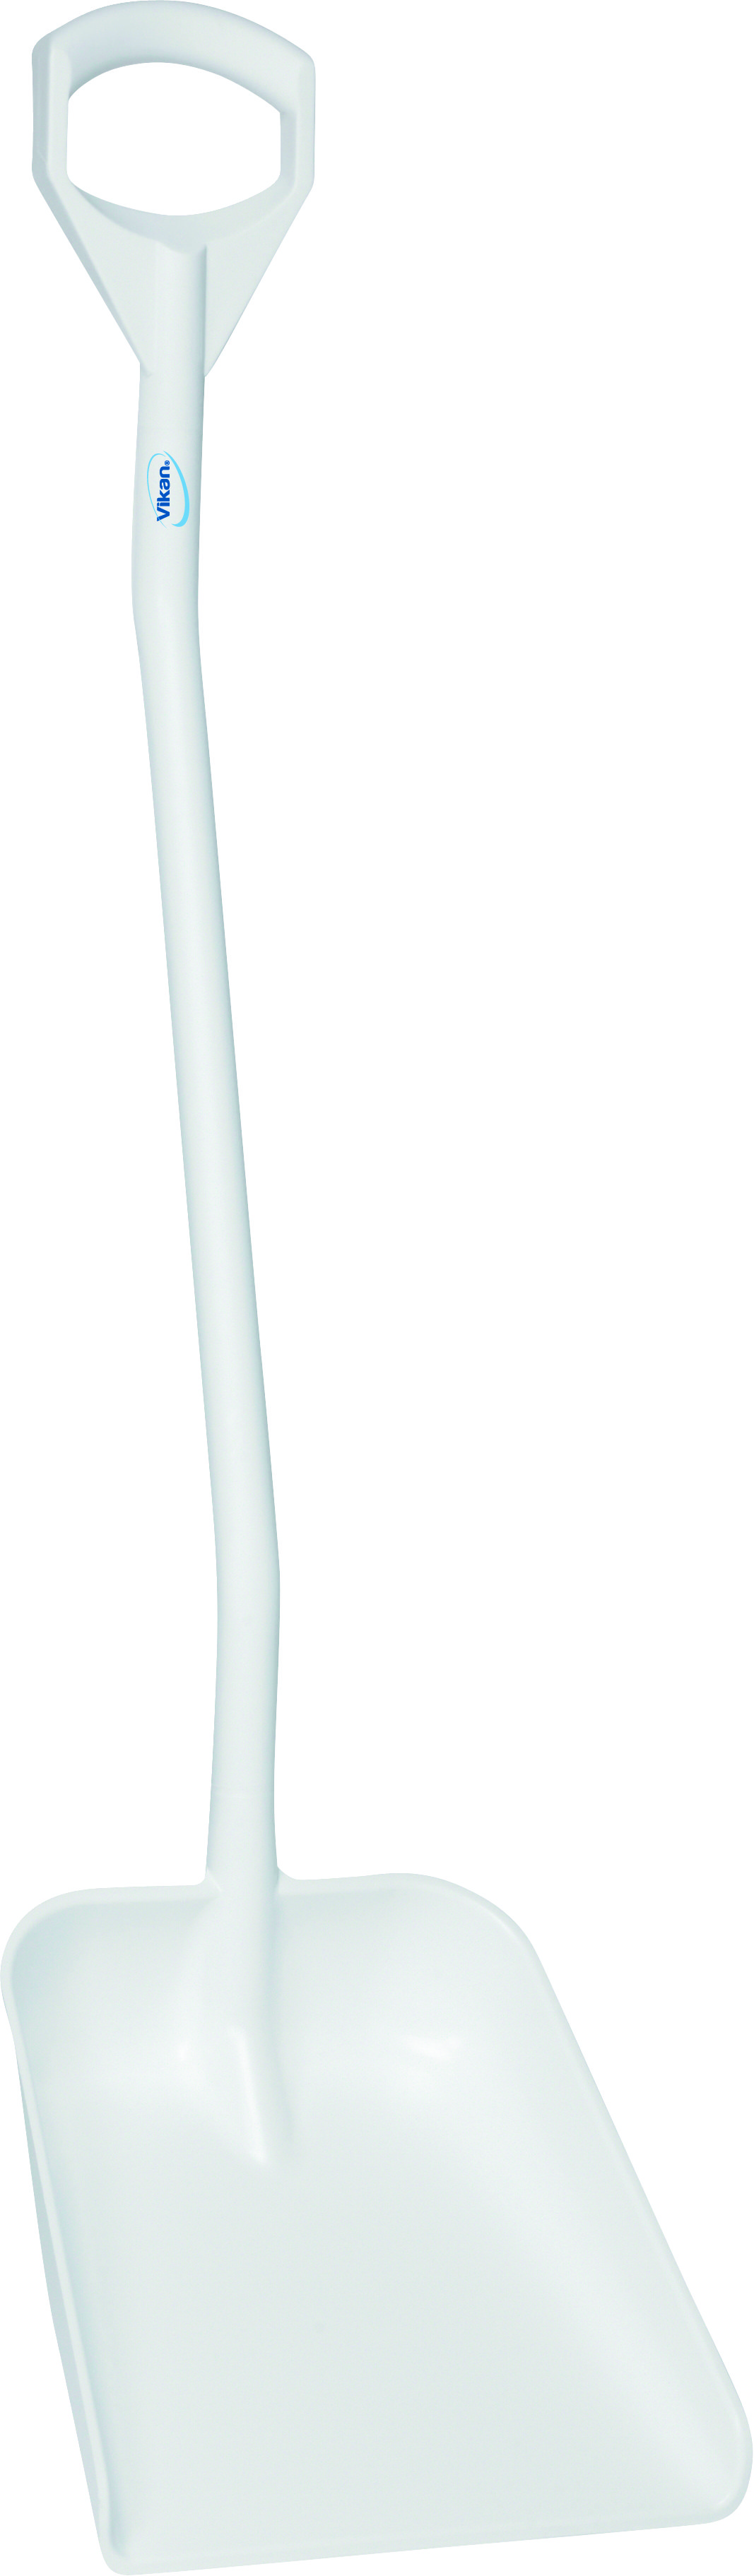 Лопата Vikan эргономичная с длинной рукояткой большая, 1310 мм, белая